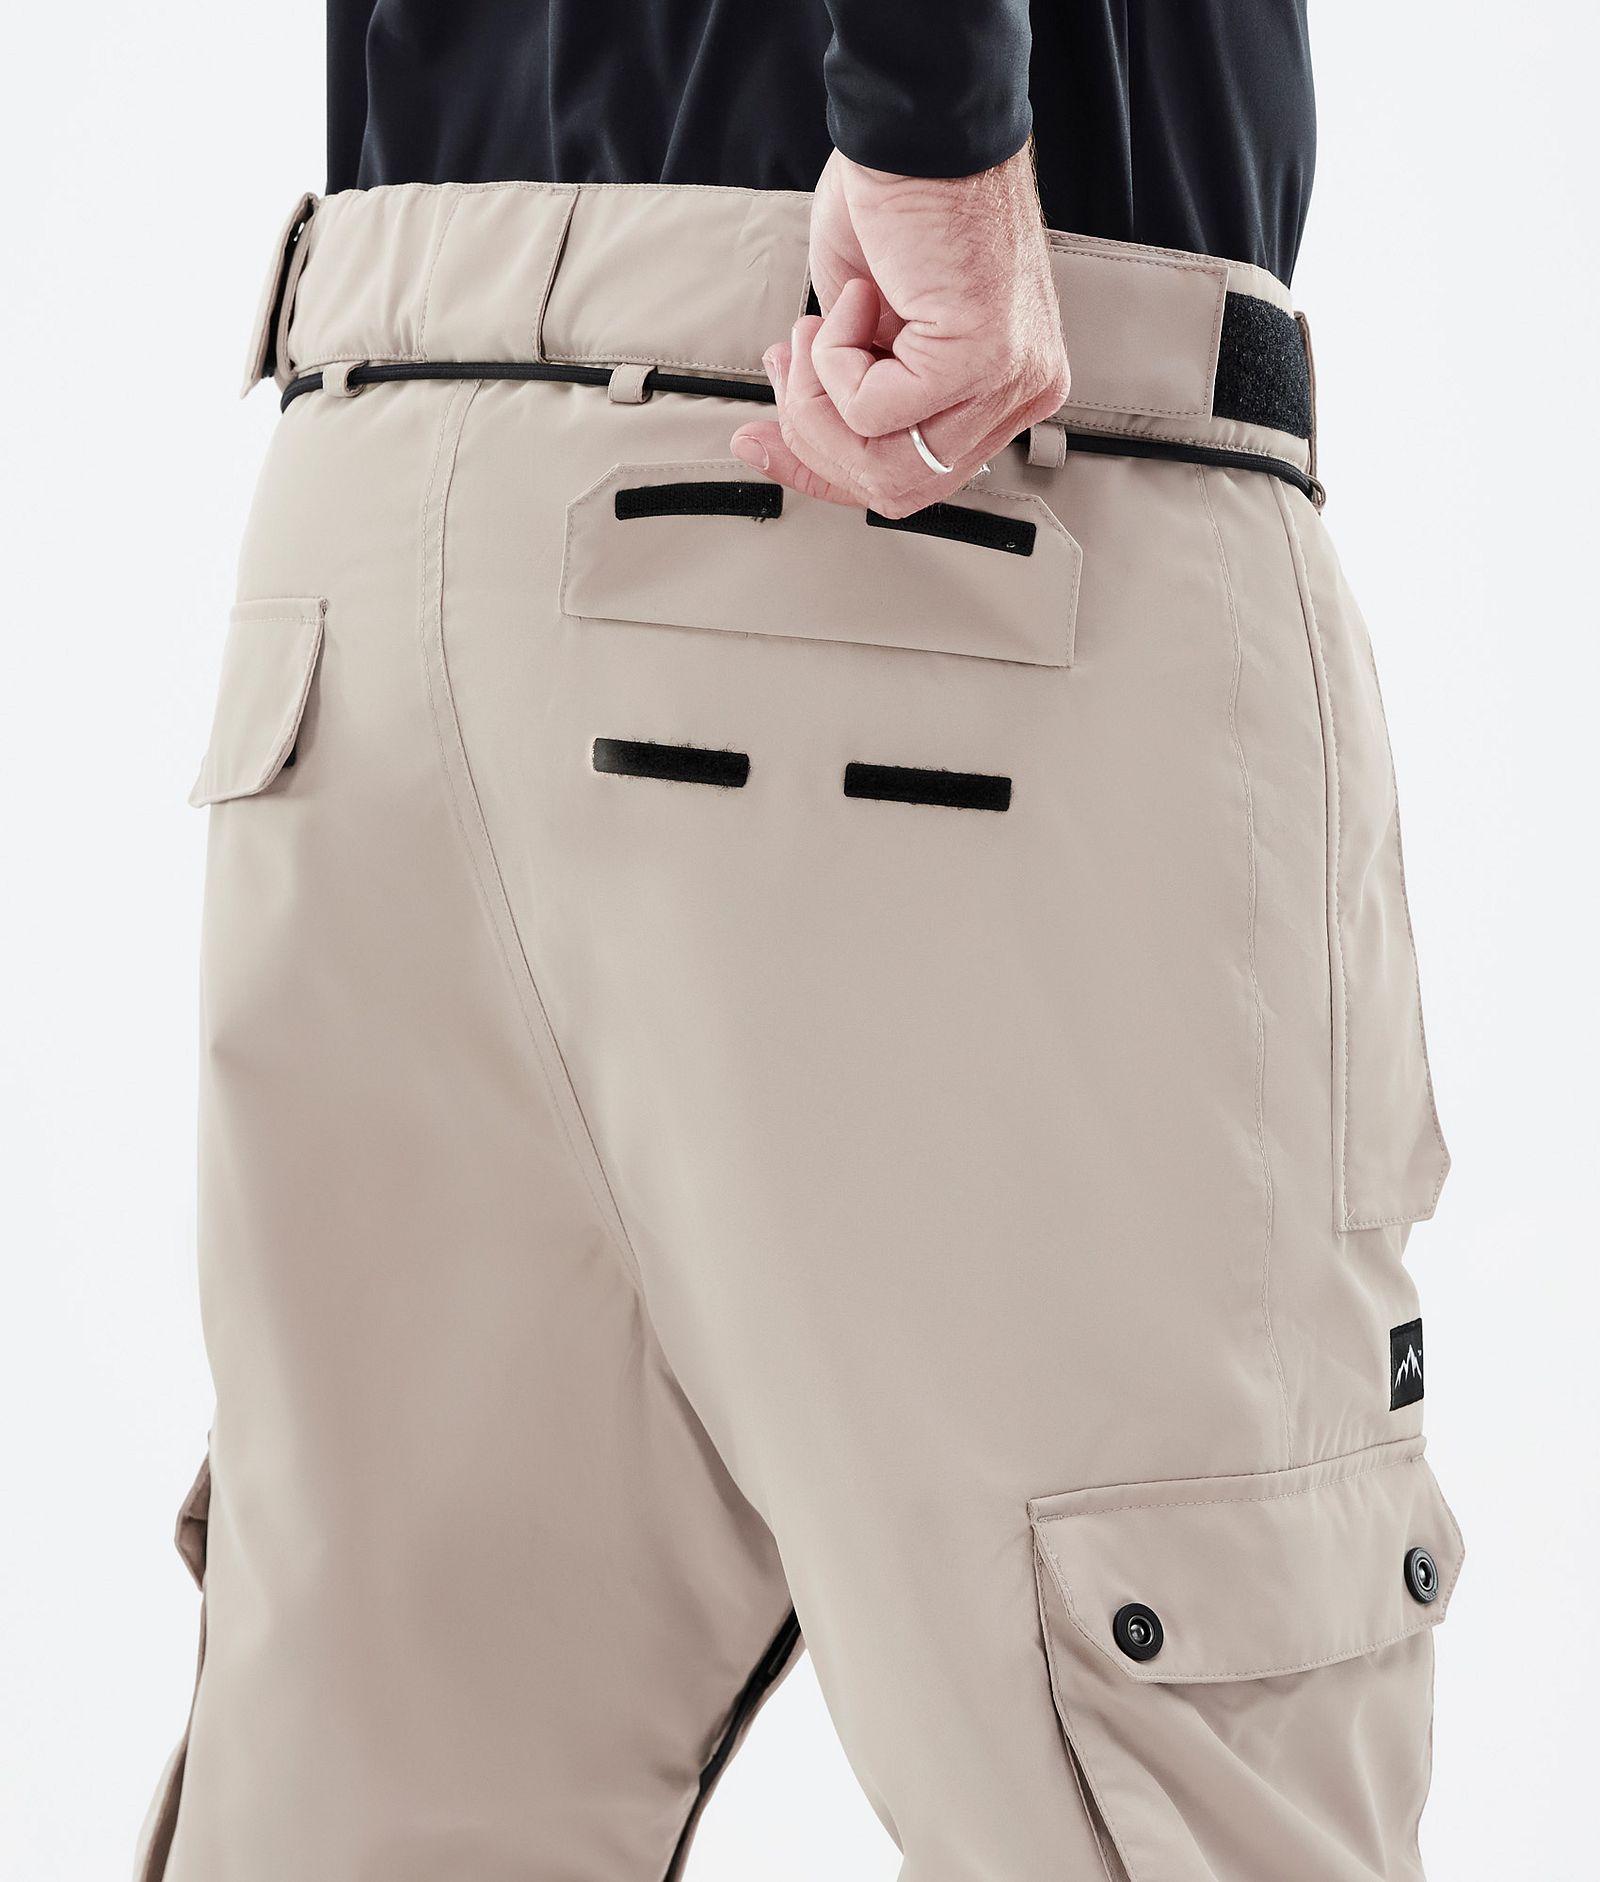 Dope Iconic Pantalon de Snowboard Homme Sand